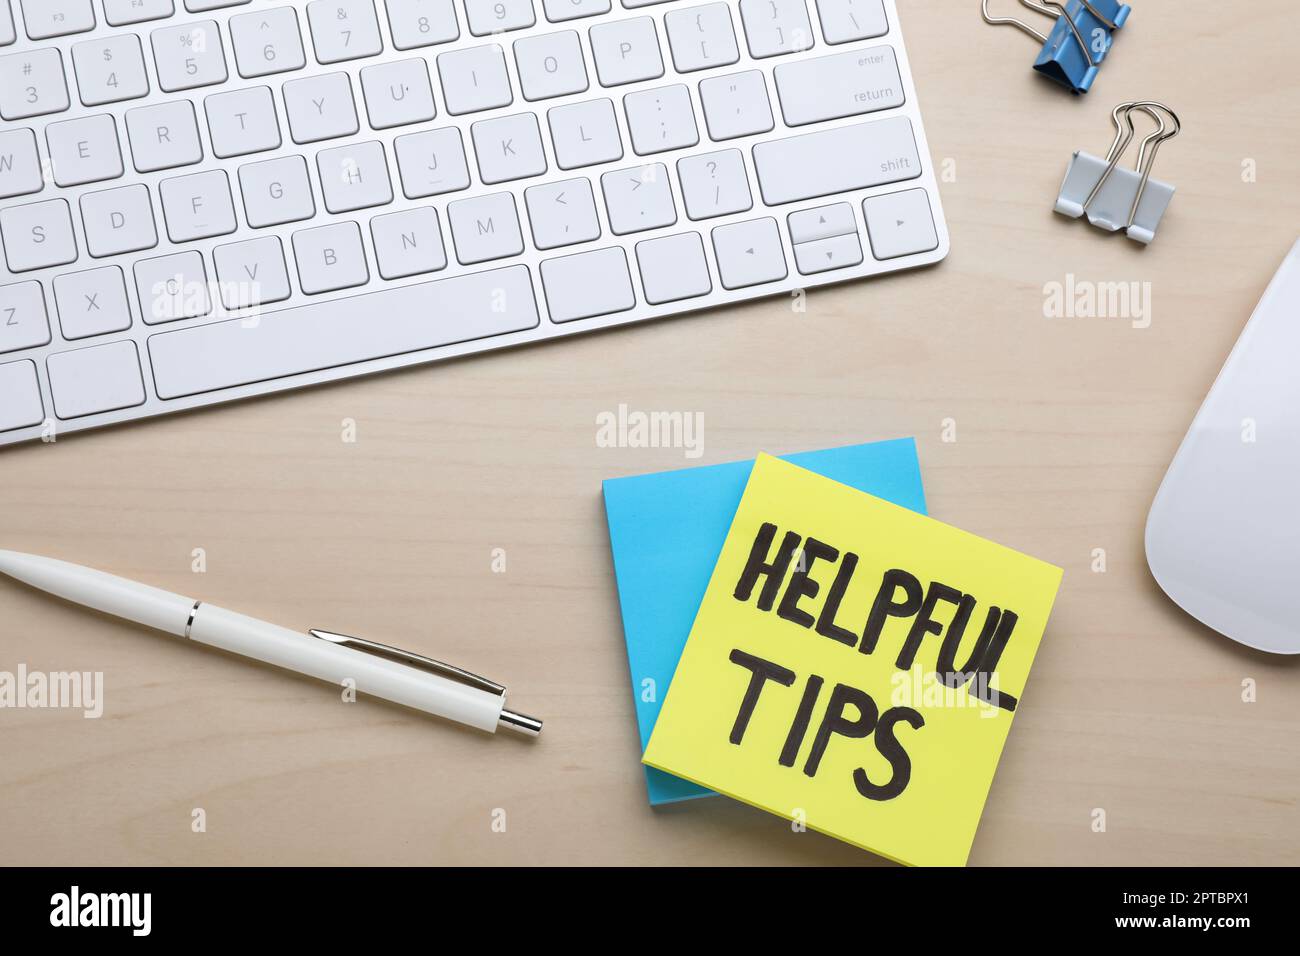 Hilfreiche Tipps. Computertastatur, Maus und Schreibwaren auf Holztisch, flach liegend Stockfoto